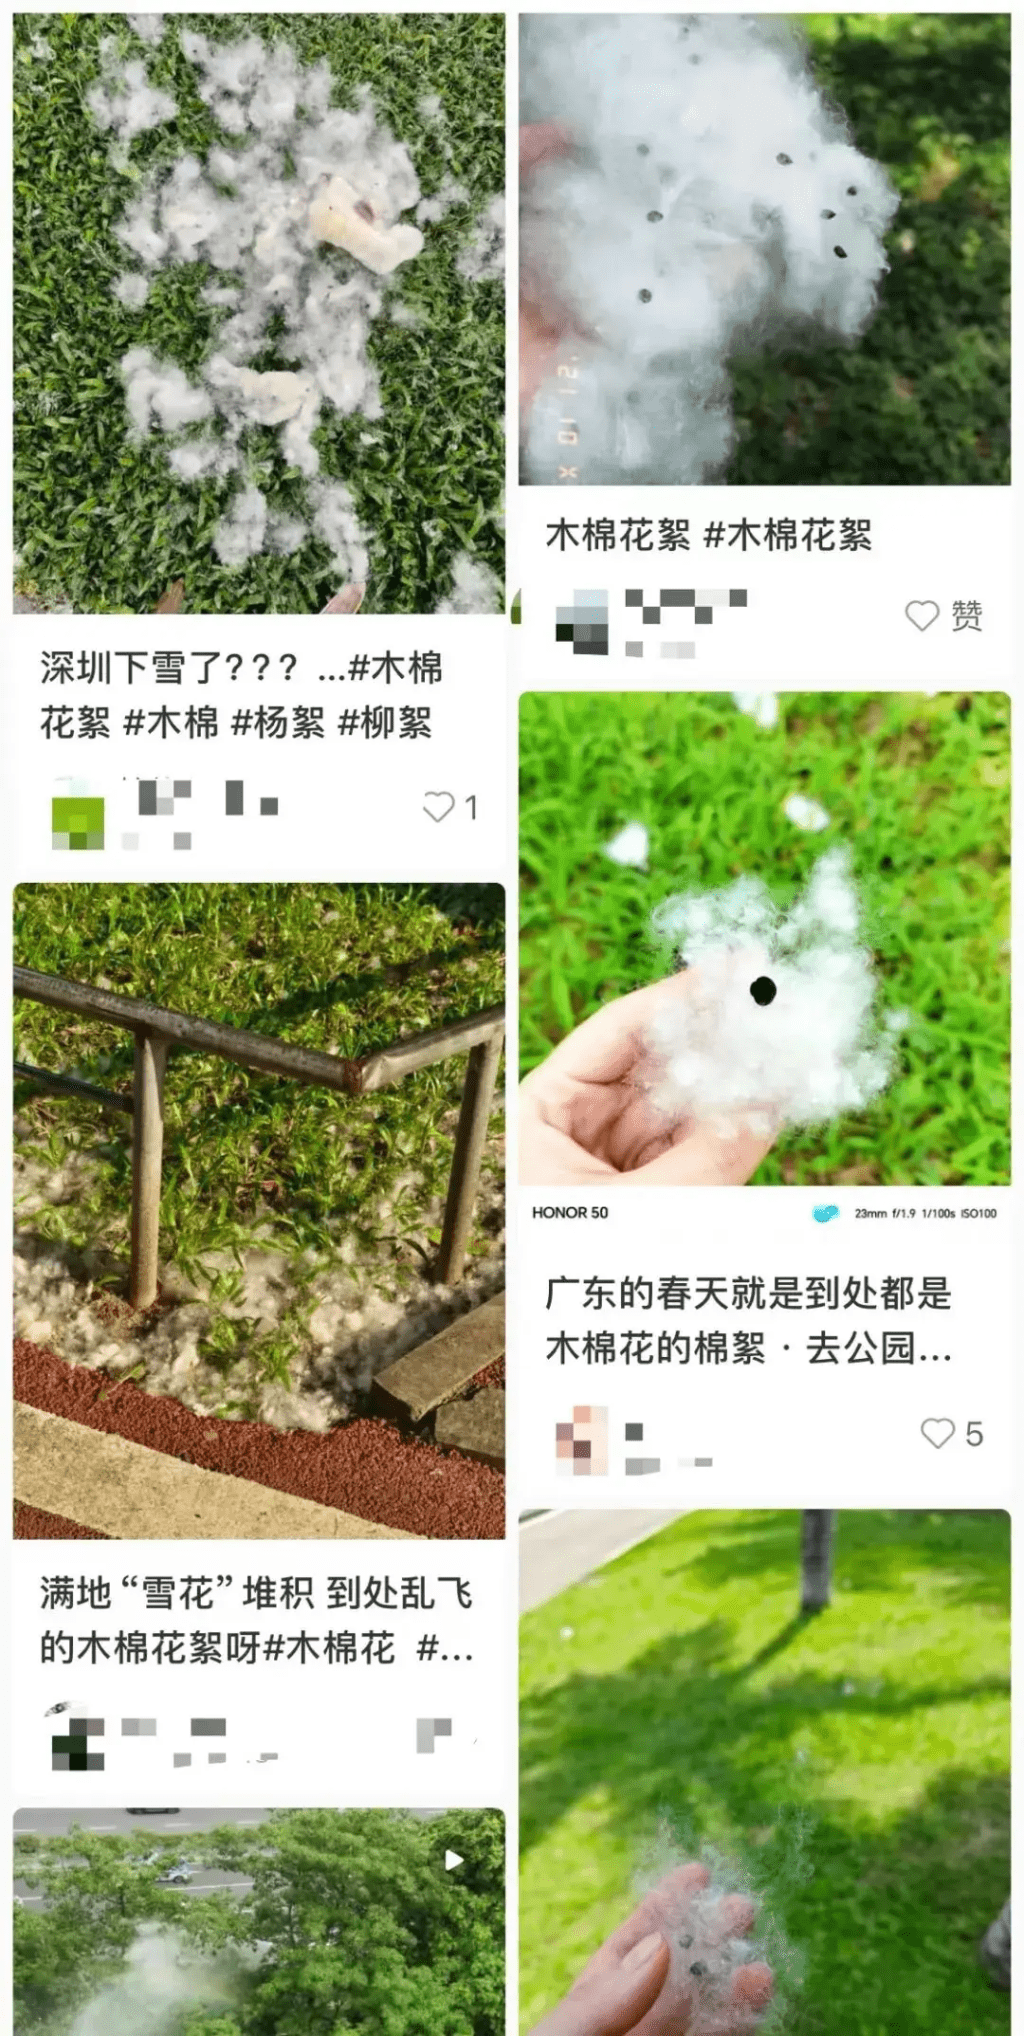 網上湧現大量深圳街頭木棉飛絮的照片。